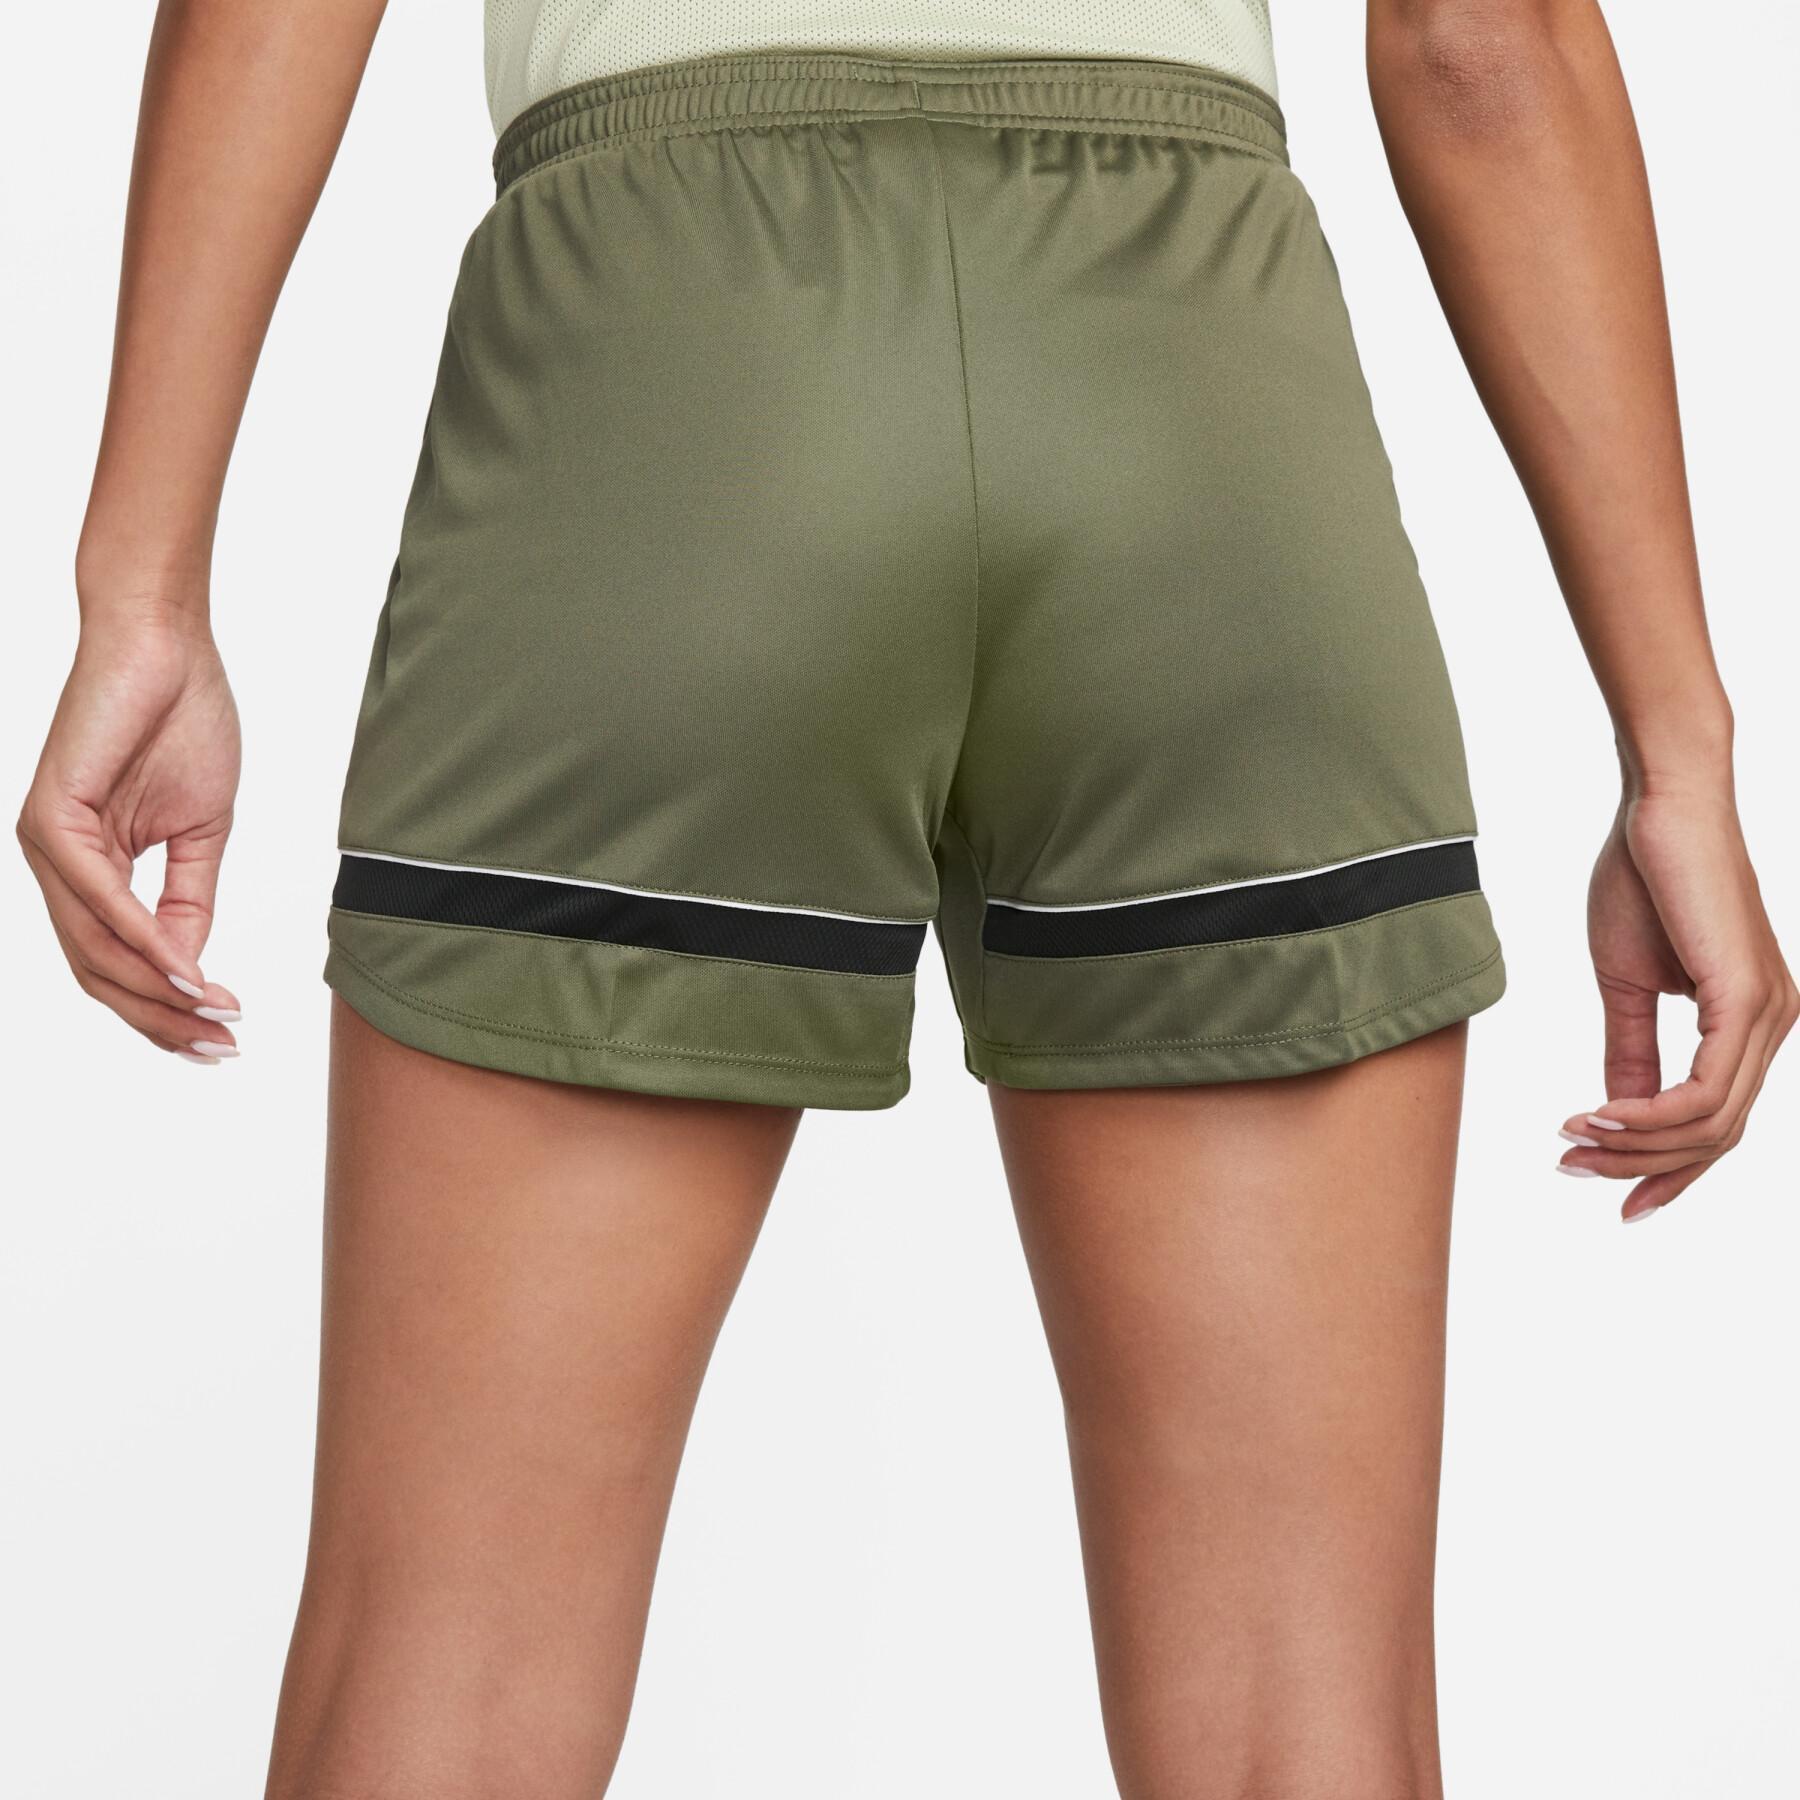 Pantalón corto mujer Nike Dri-Fit Academy